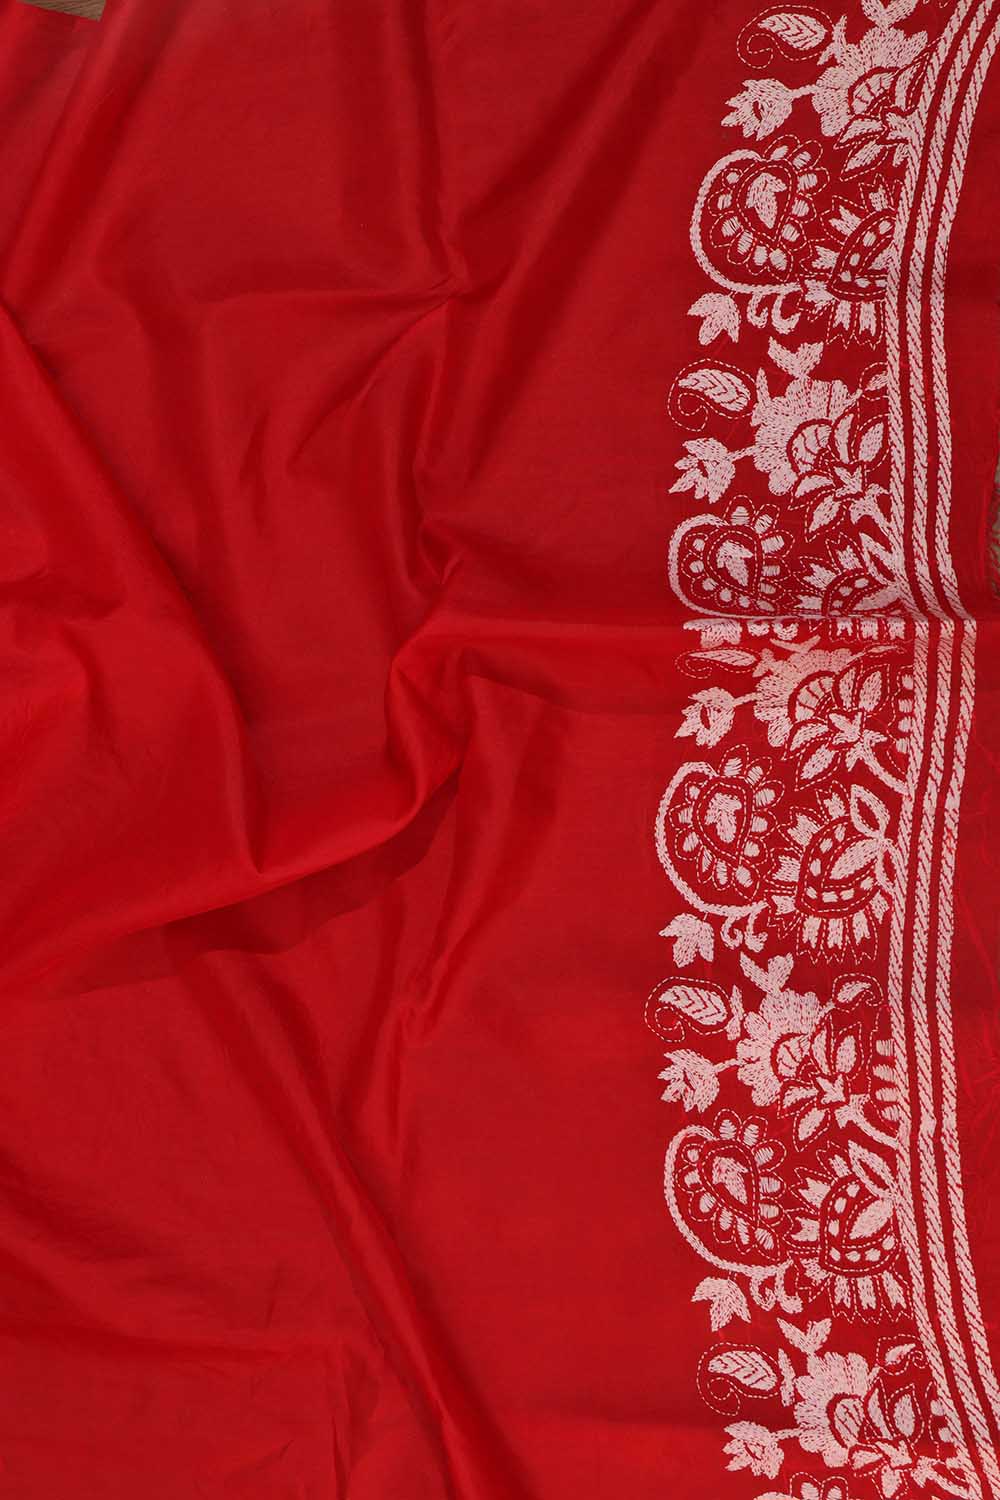 Exquisite Red Hand Embroidered Kantha Work Bangalore Silk Saree - Luxurion World